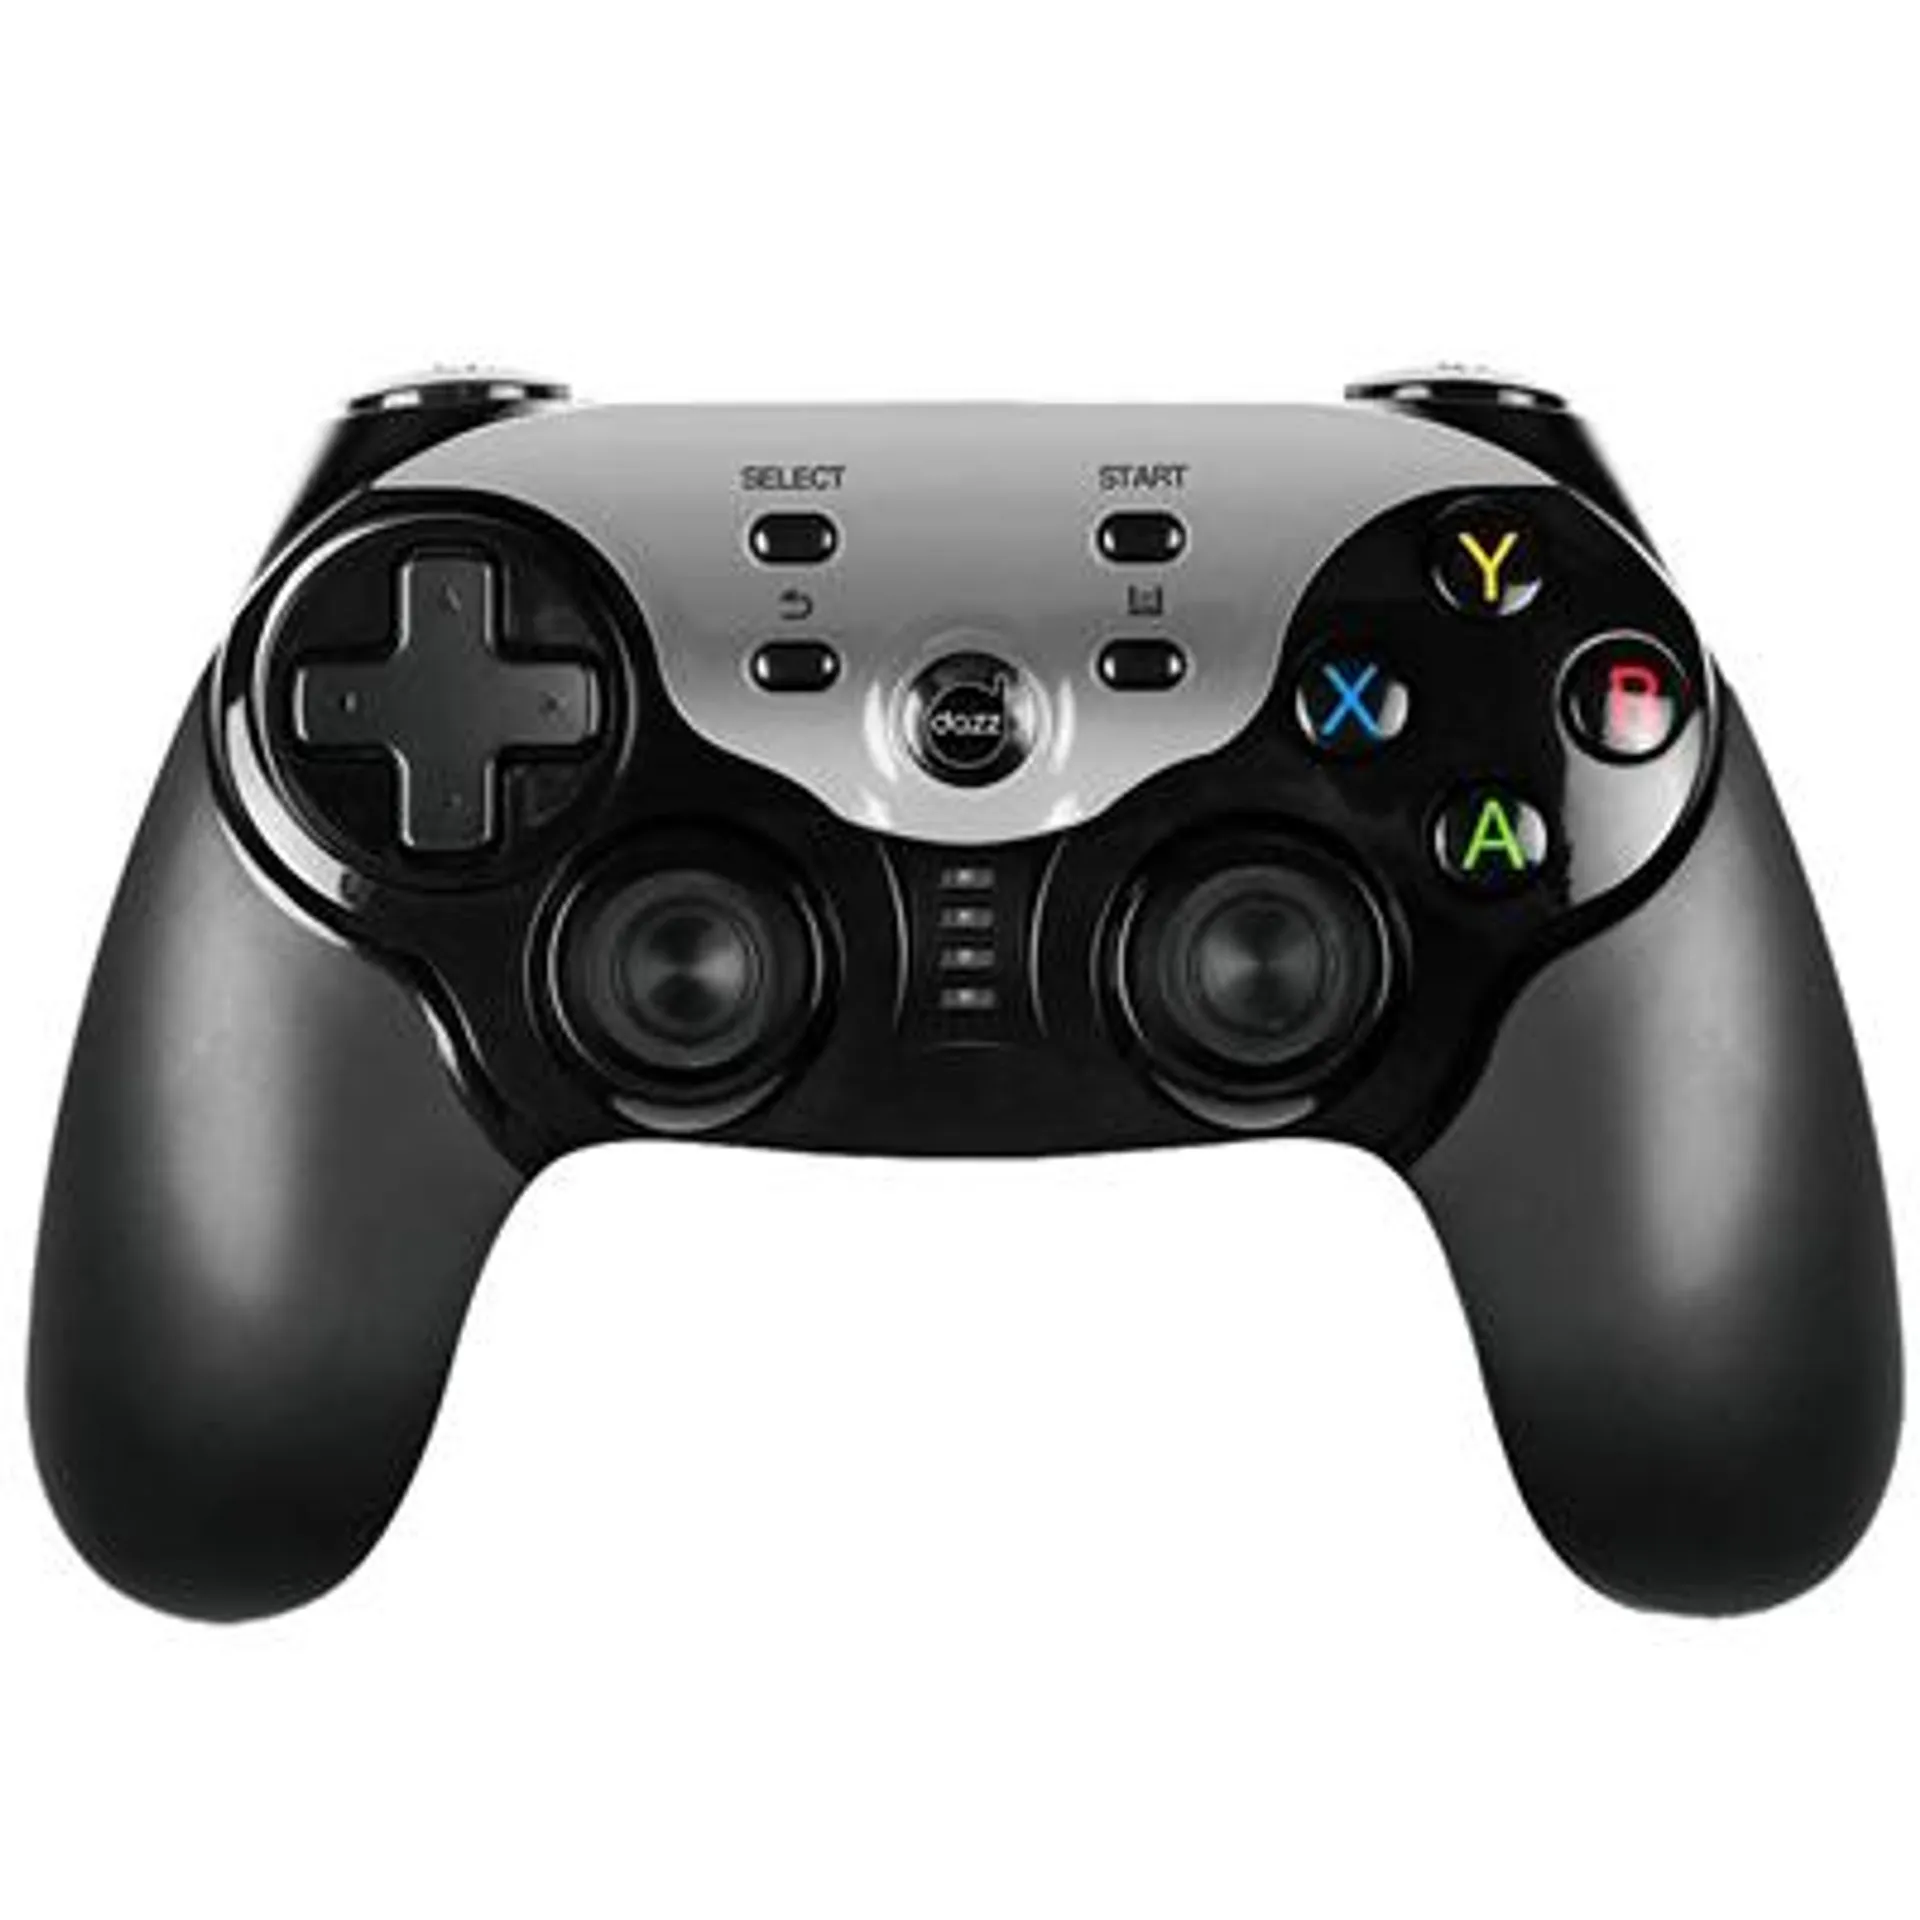 Controle Dazz Cyborg Dual Shock, Design Ergonômico, Conexão USB, 16 botões, Compatível com PS3, PC, Android - 62000058